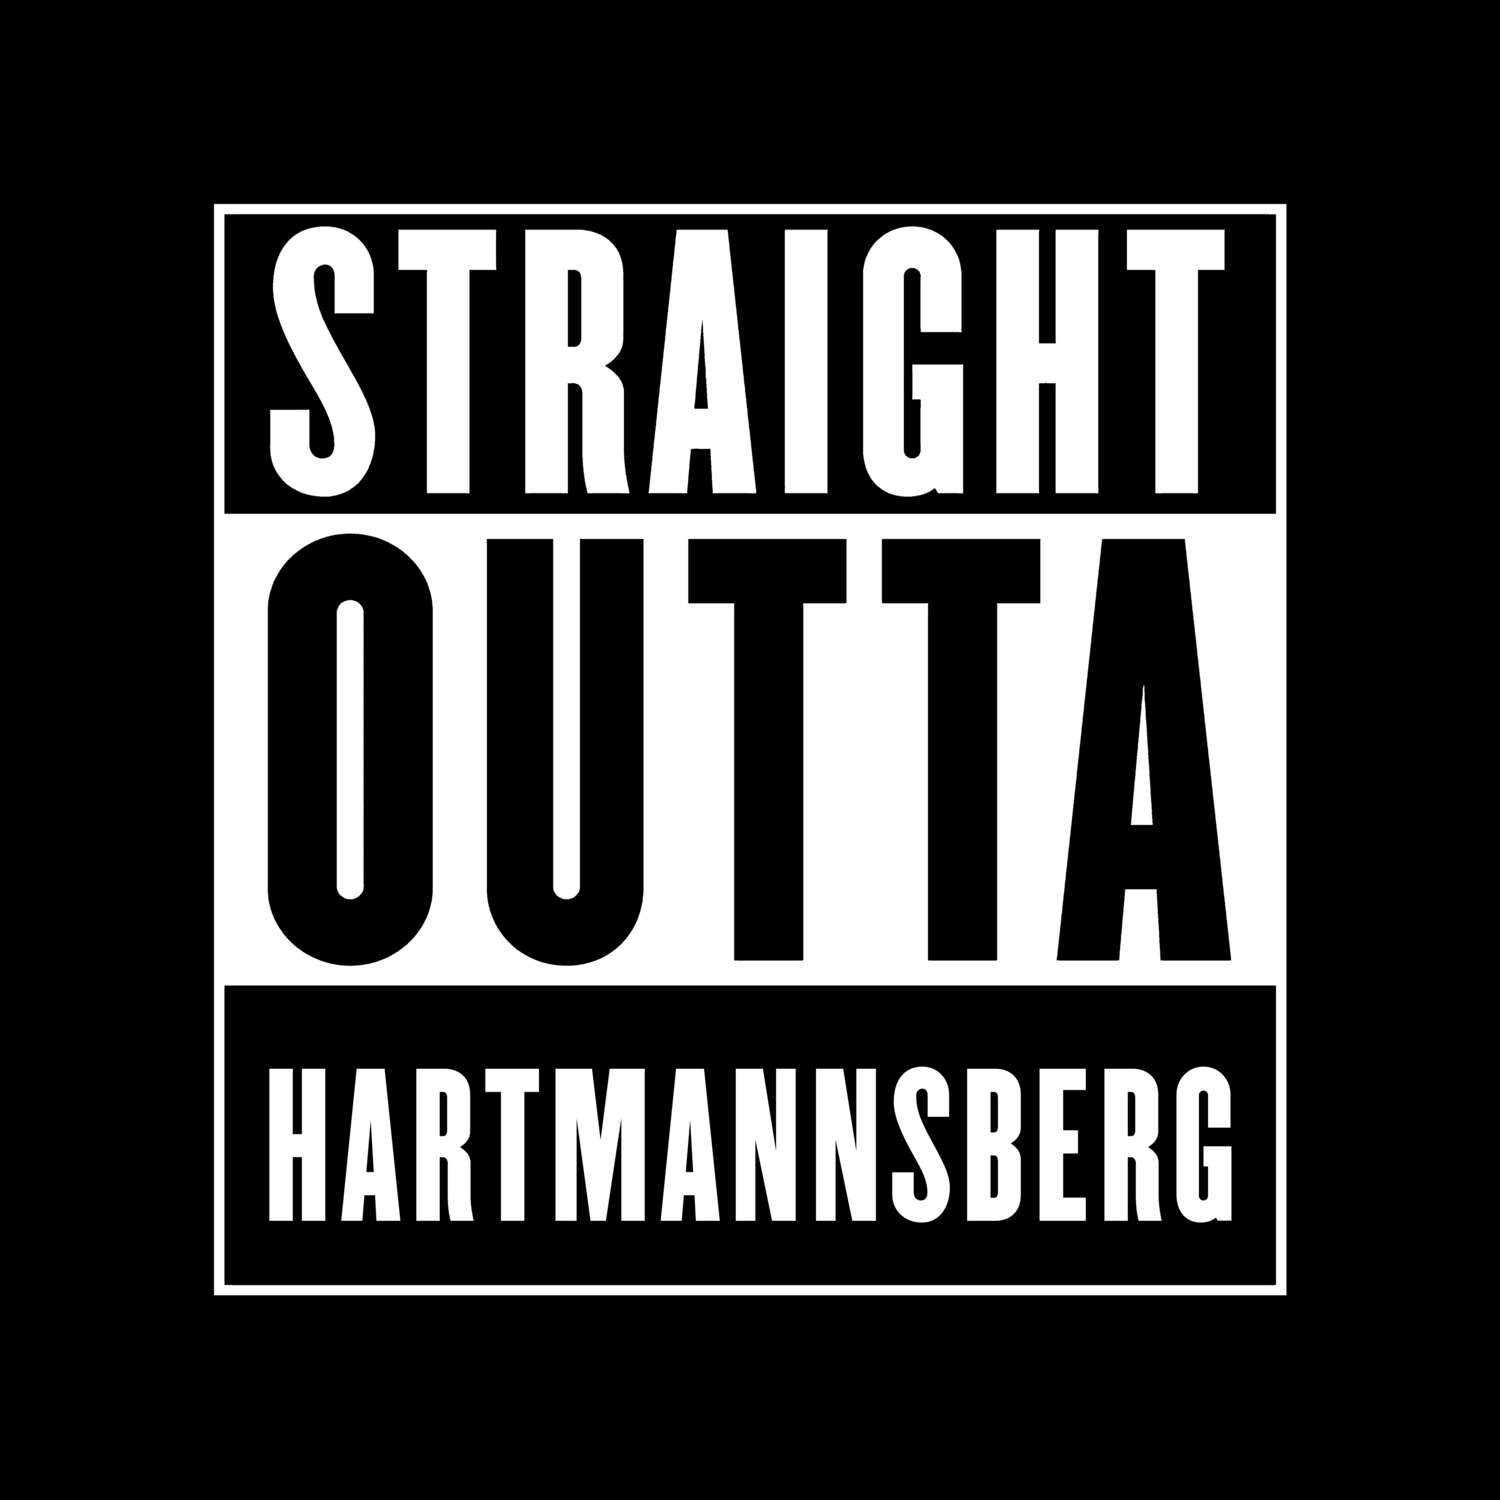 Hartmannsberg T-Shirt »Straight Outta«